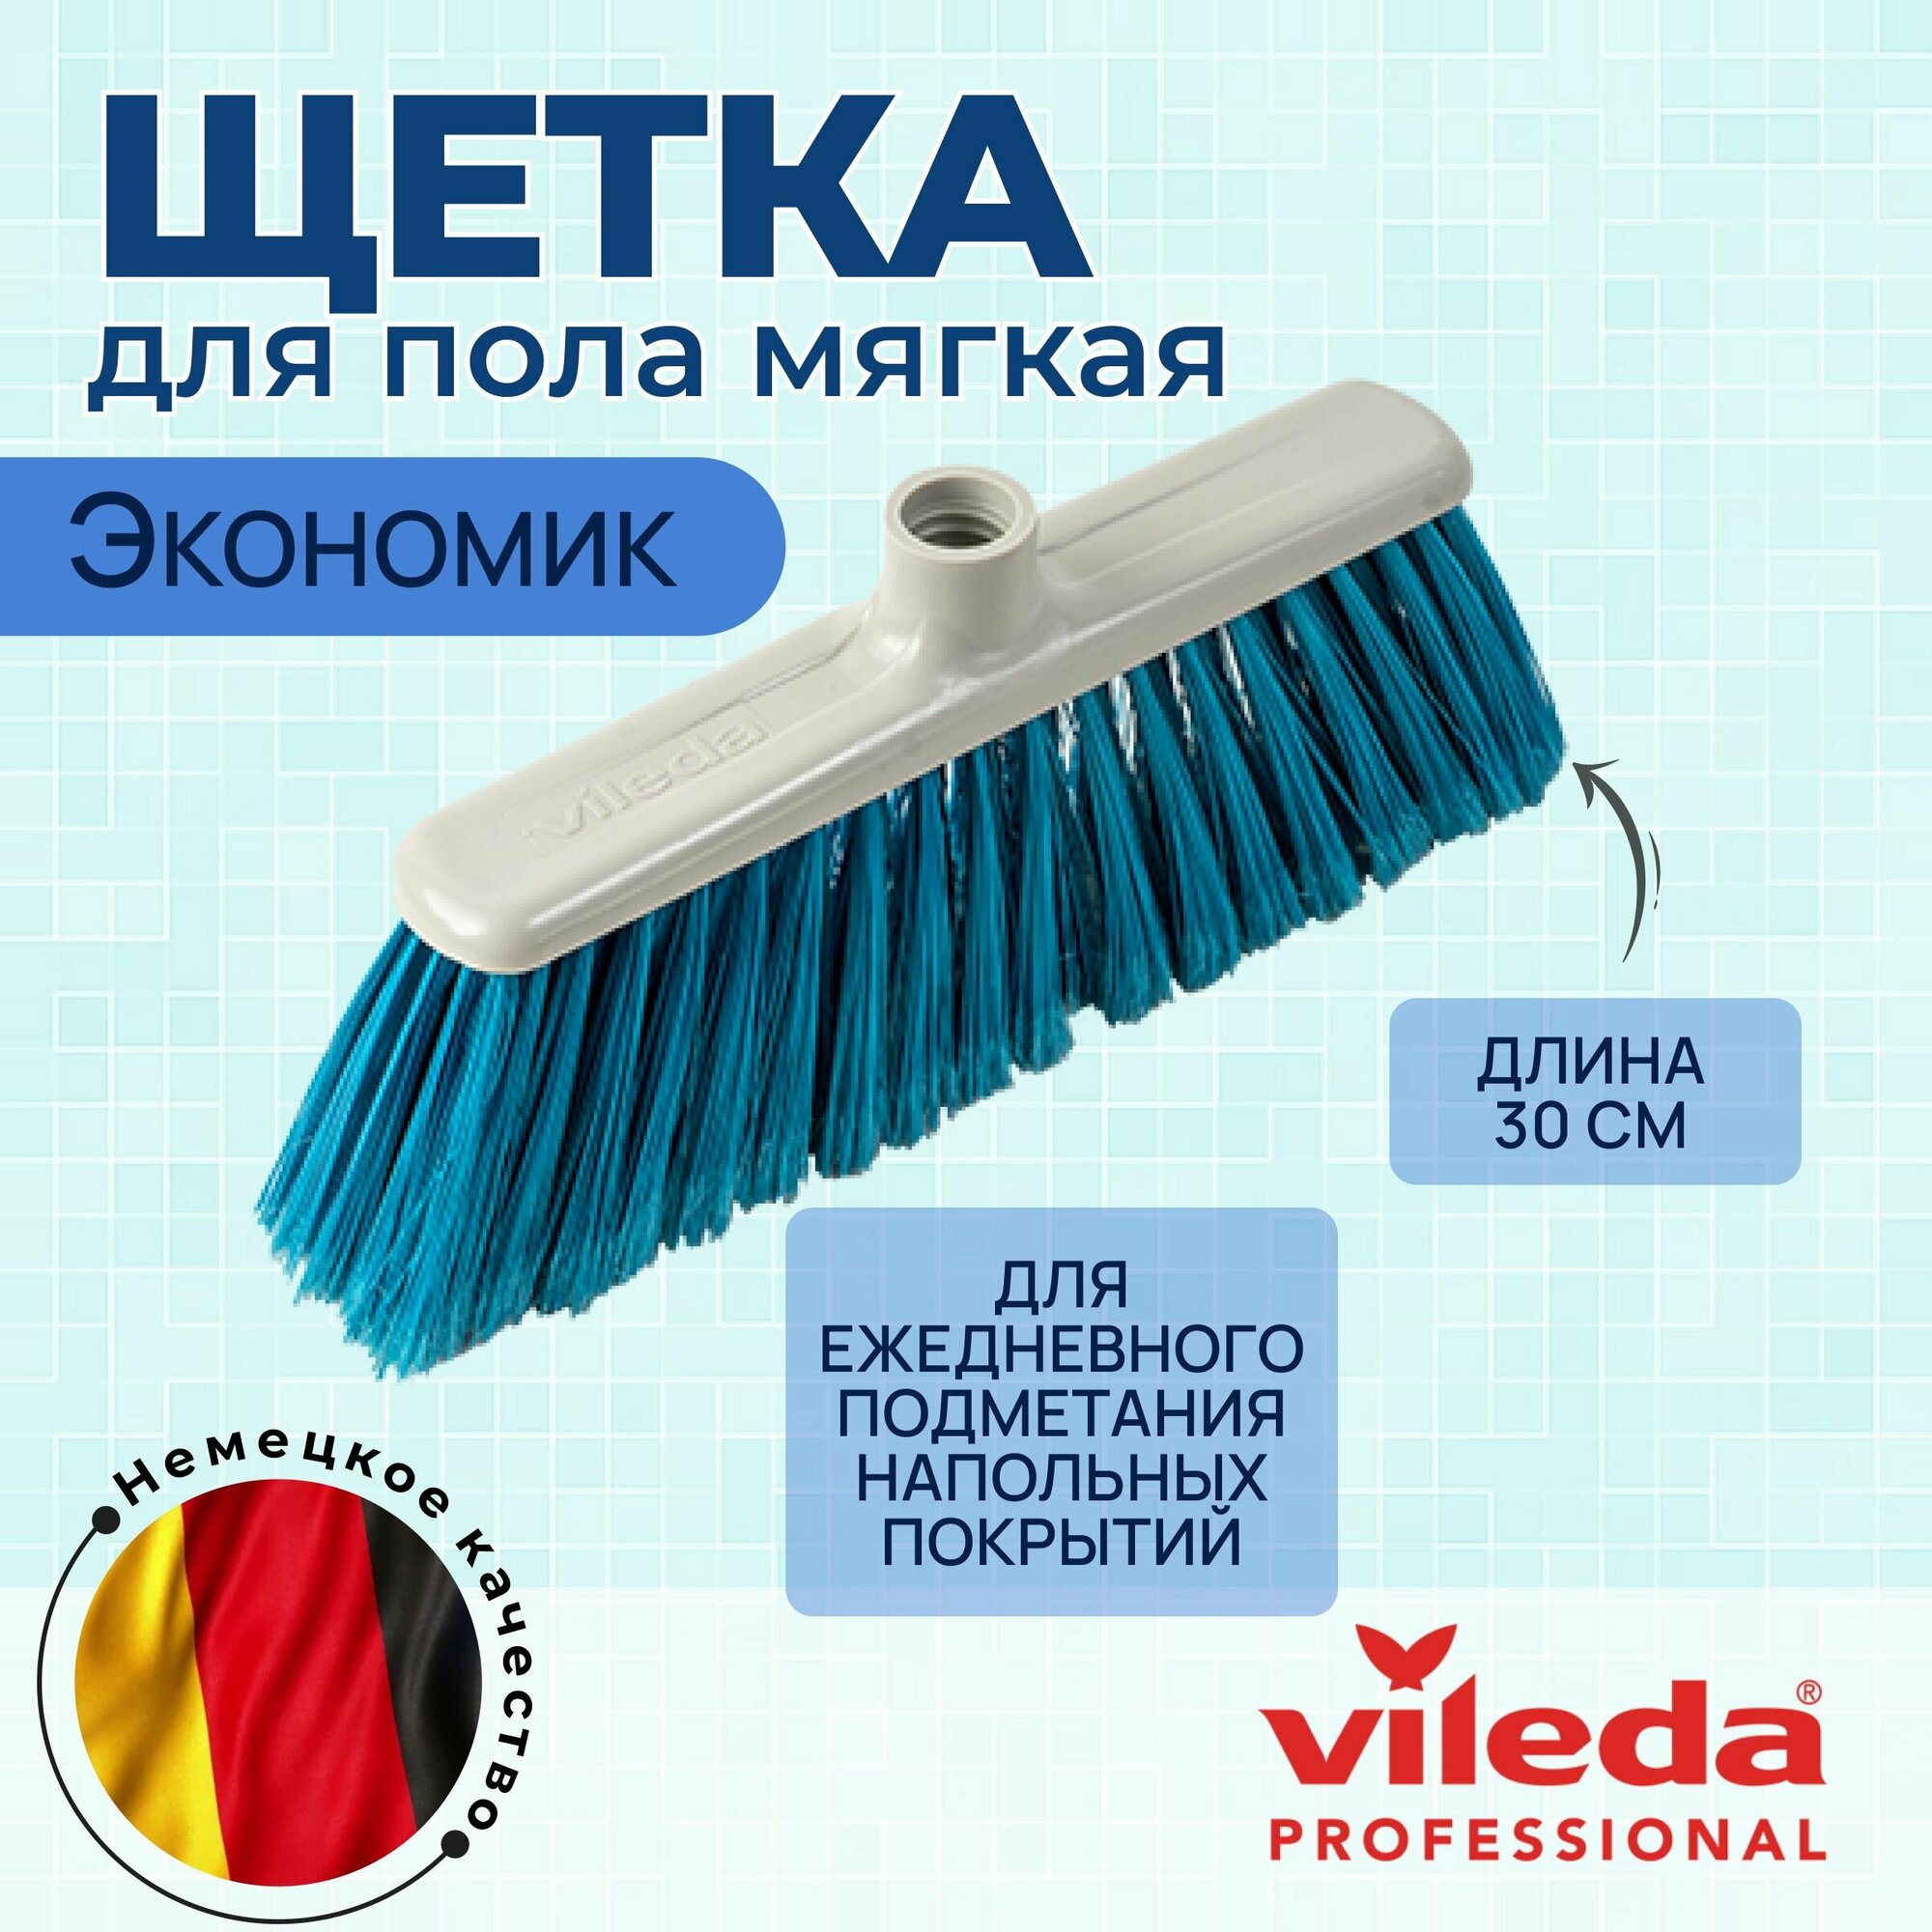 Щетка-швабра Vileda для уборки подметания пола мягкая, 30 см Экономик синяя насадка, арт. 102583